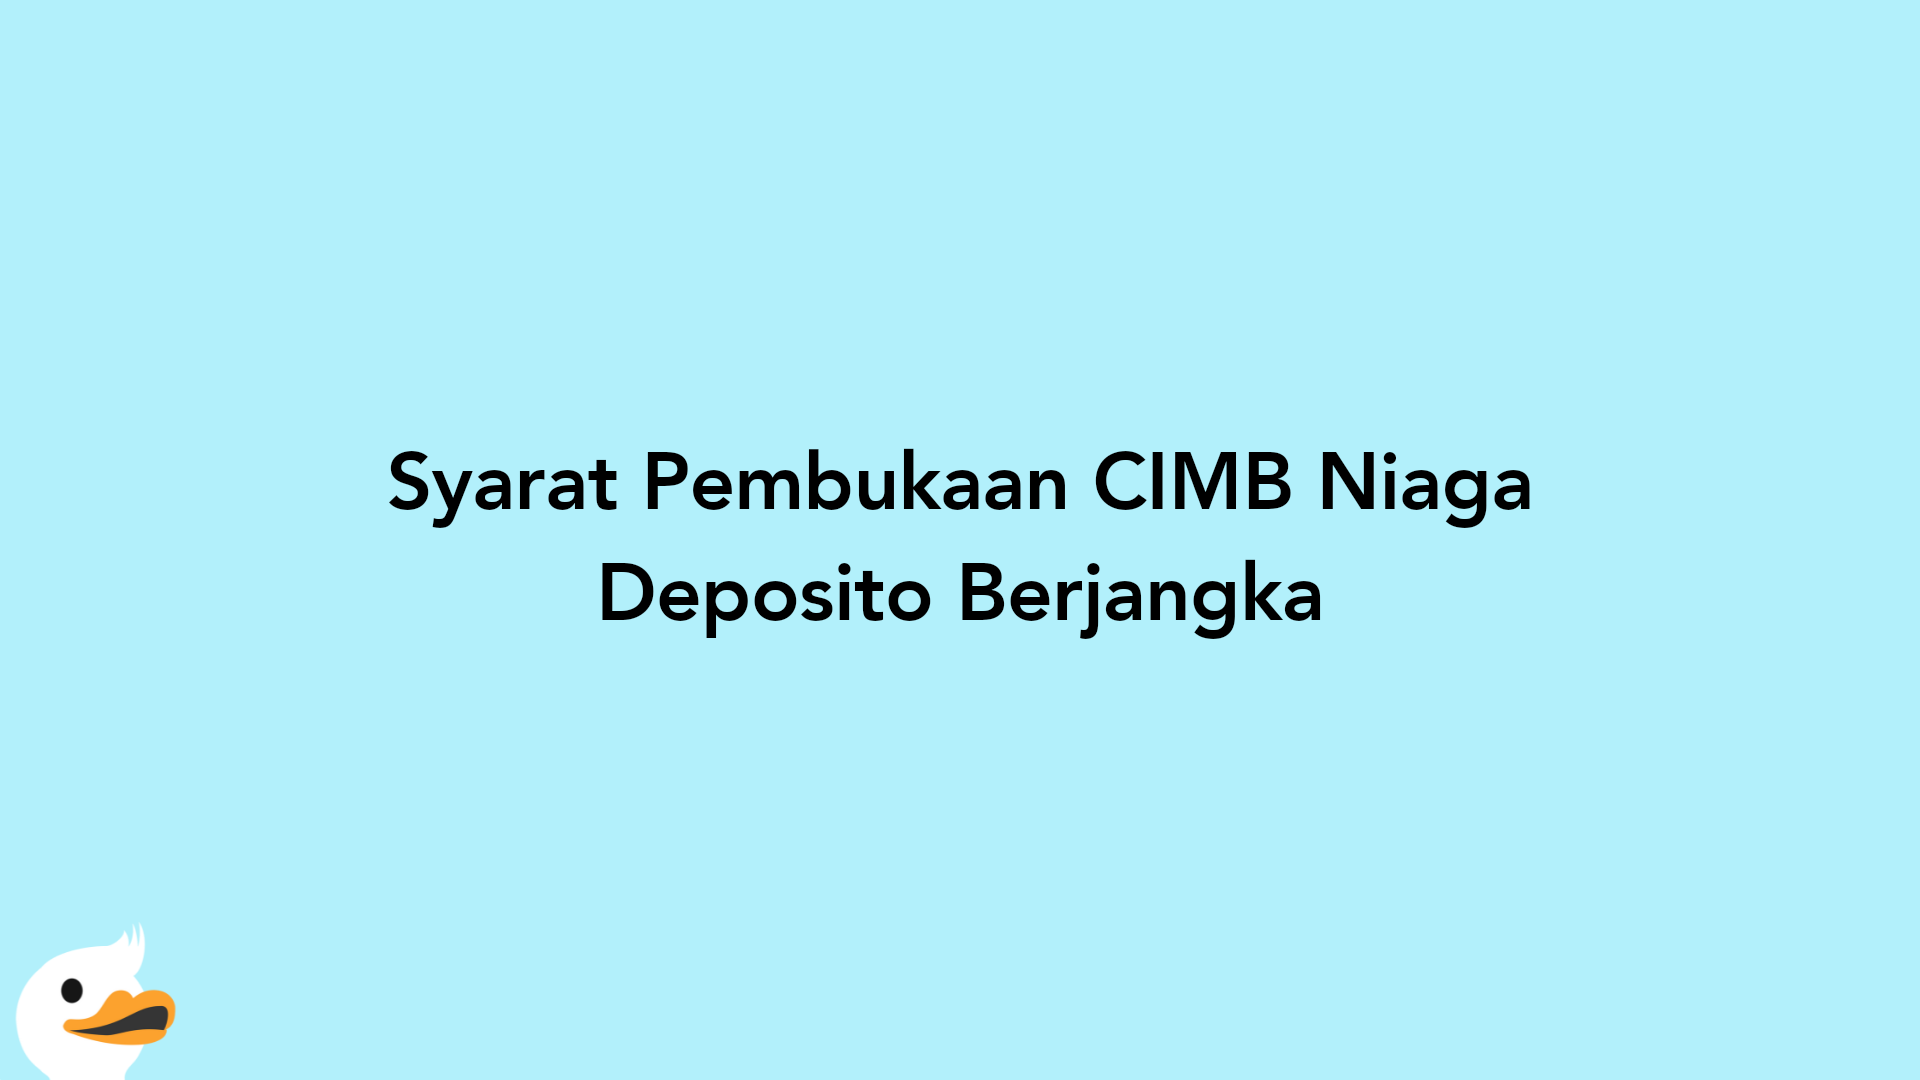 Syarat Pembukaan CIMB Niaga Deposito Berjangka